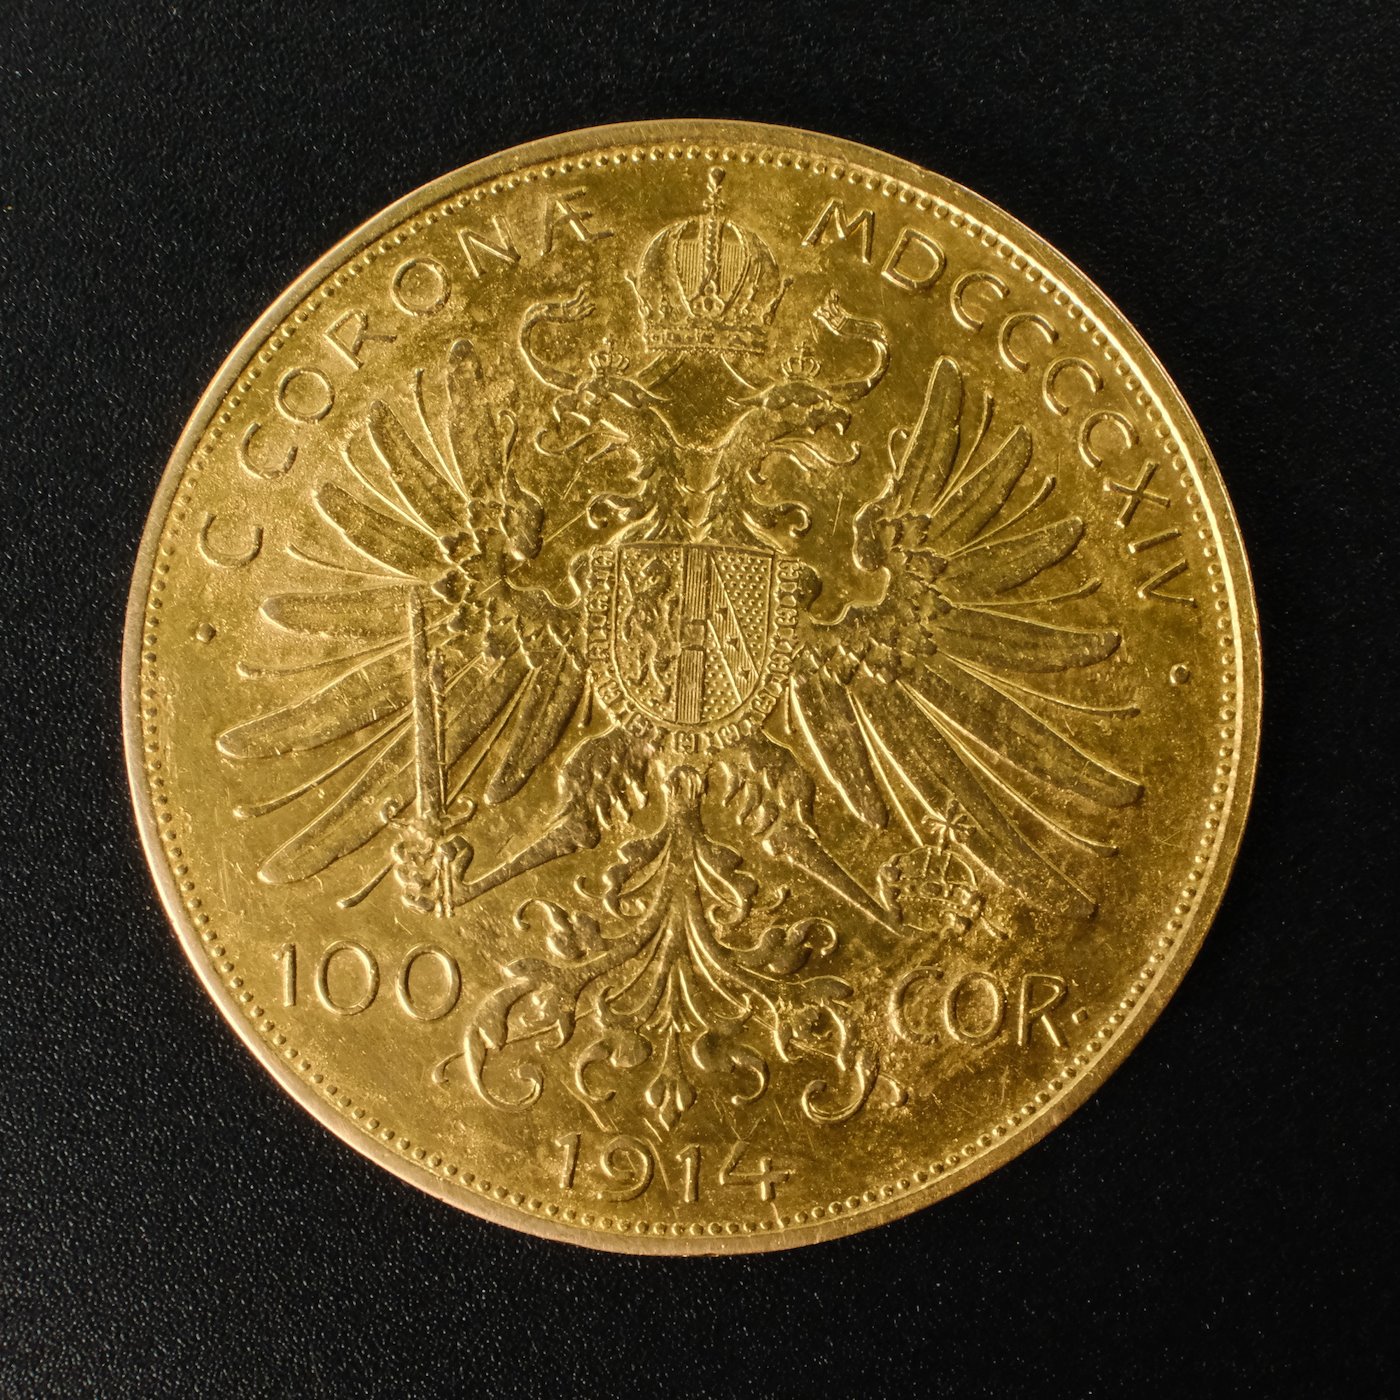 Mince - Rakousko Uhersko zlatá 100 Koruna  1914 originální ražba RR!! Zlato 900/1000, hrubá hmotnost mince 33,875g